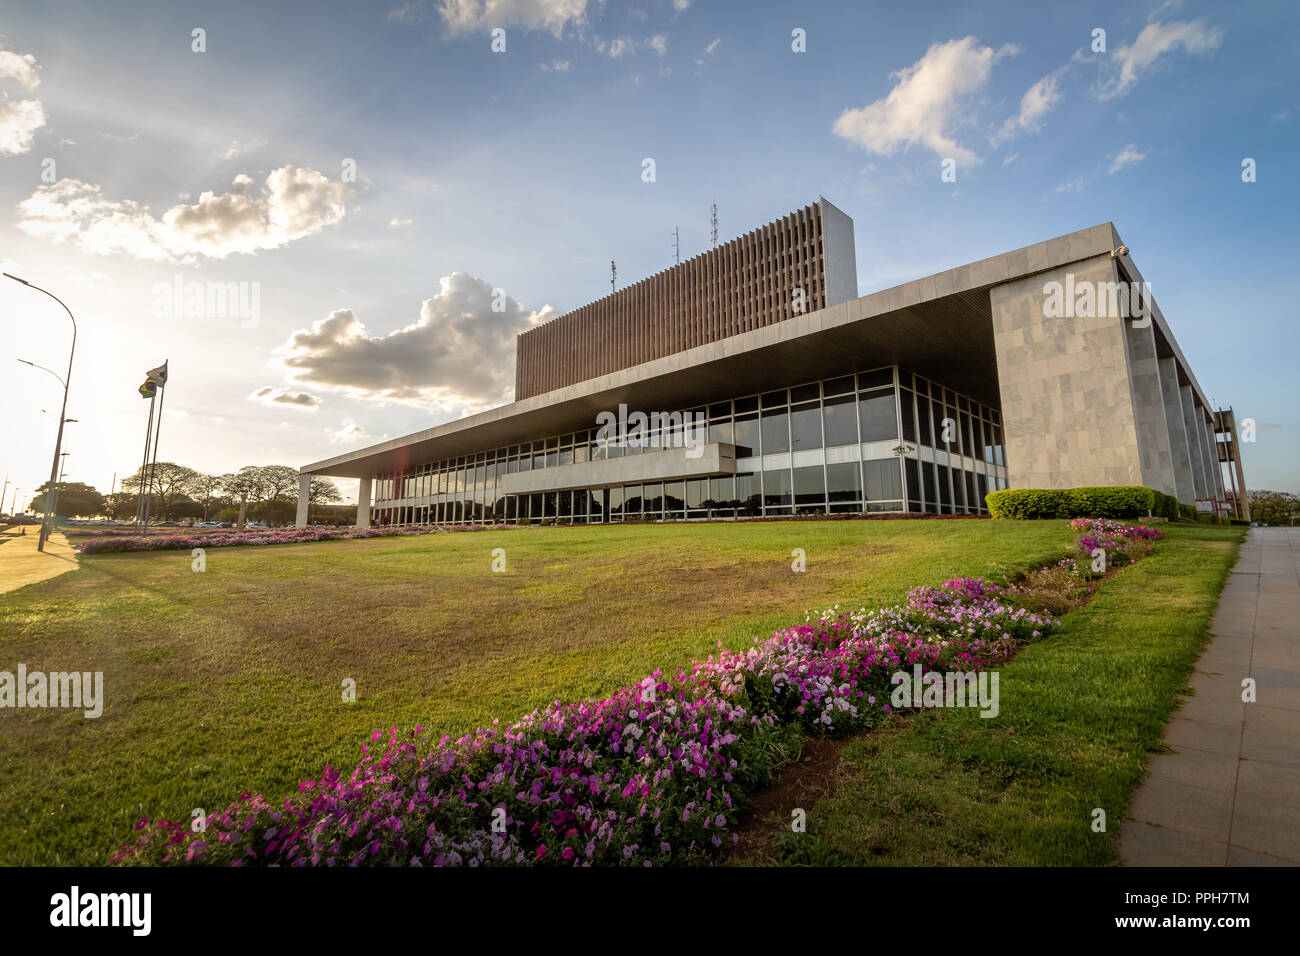 Palace of Buriti seat of government of Distrito Federal - Brasilia, Distrito Federal, Brazil Stock Photo